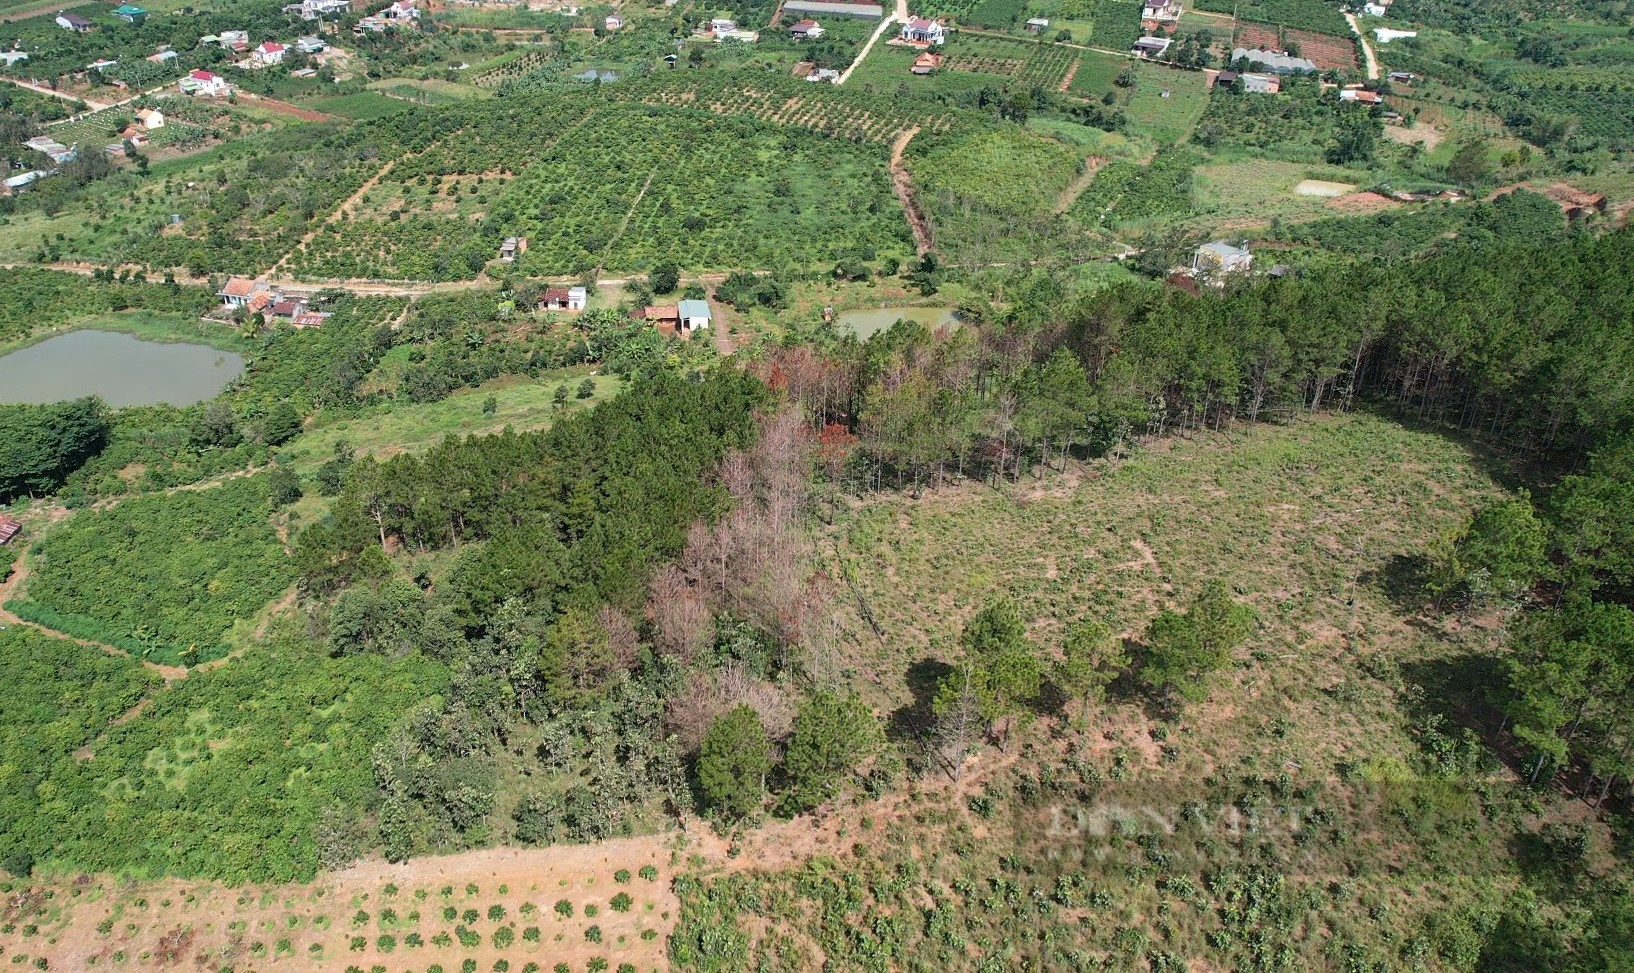 Phá rừng thông ở Lâm Đồng: Hàng trăm cây thông 3 lá nằm la liệt, huyện hỏa tốc chỉ đạo xử lý - Ảnh 9.